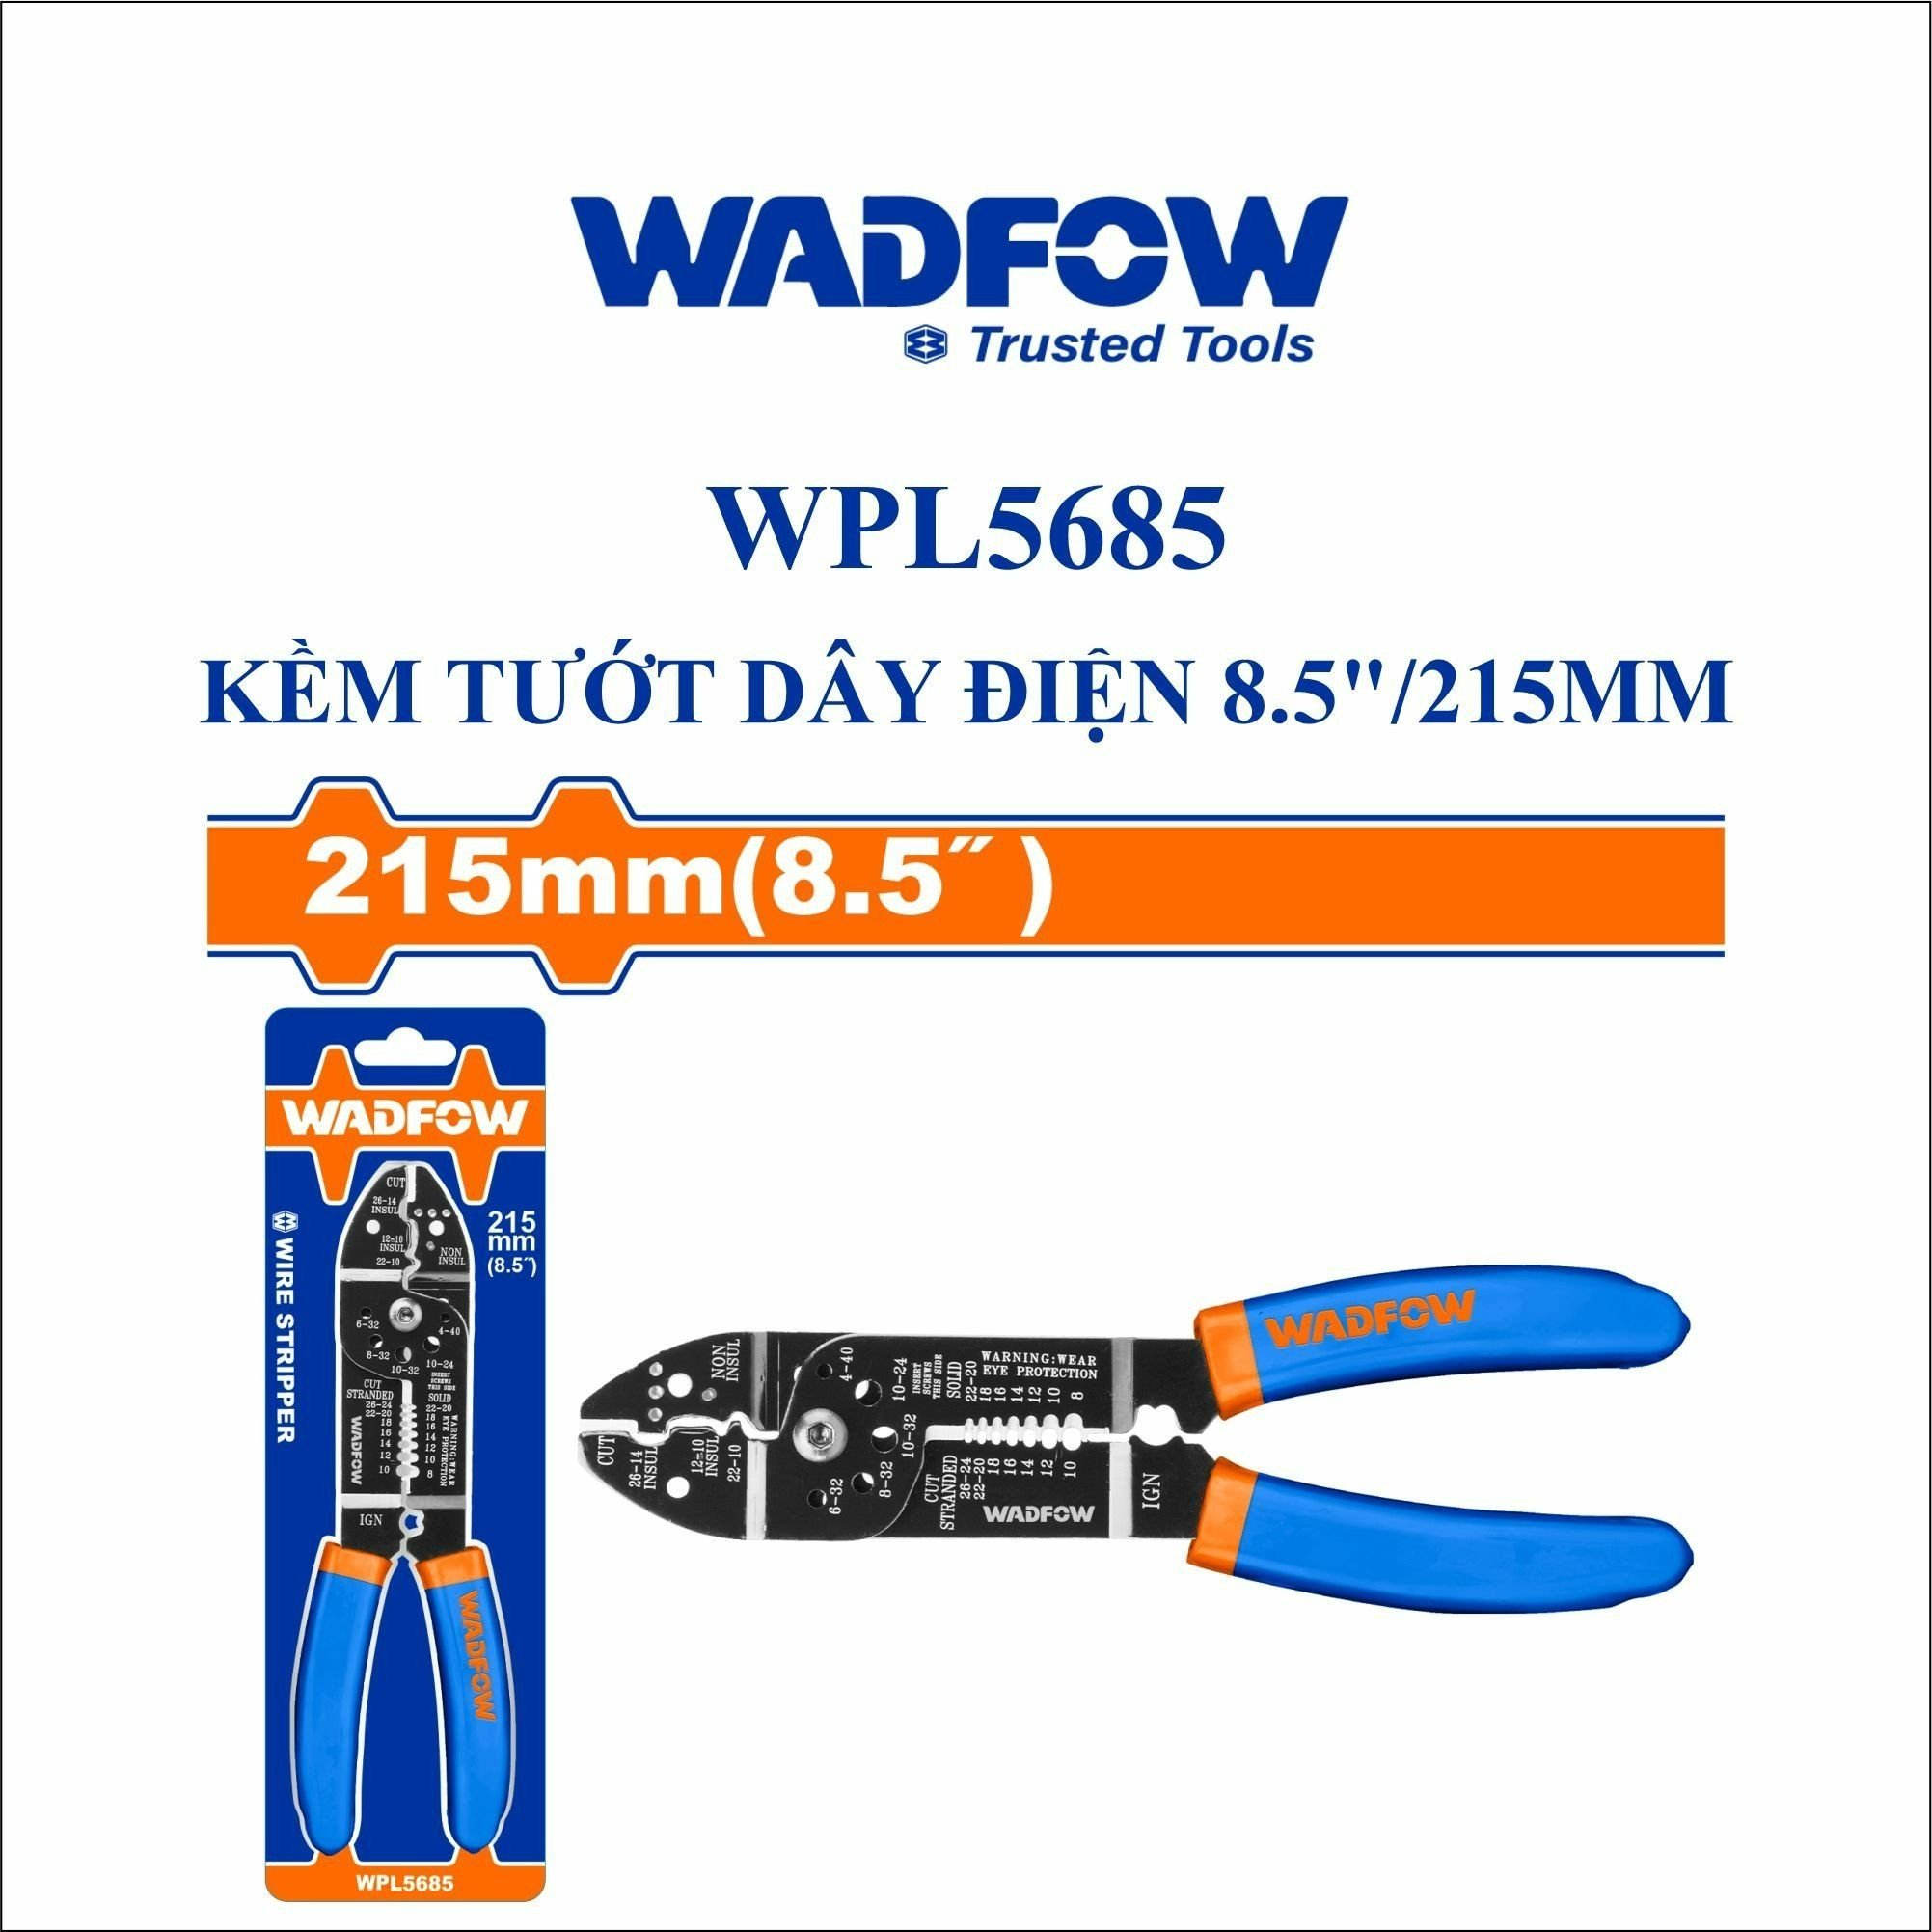  Kìm tuốt dây điện 8.5 Inch/215mm WADFOW WPL5685 